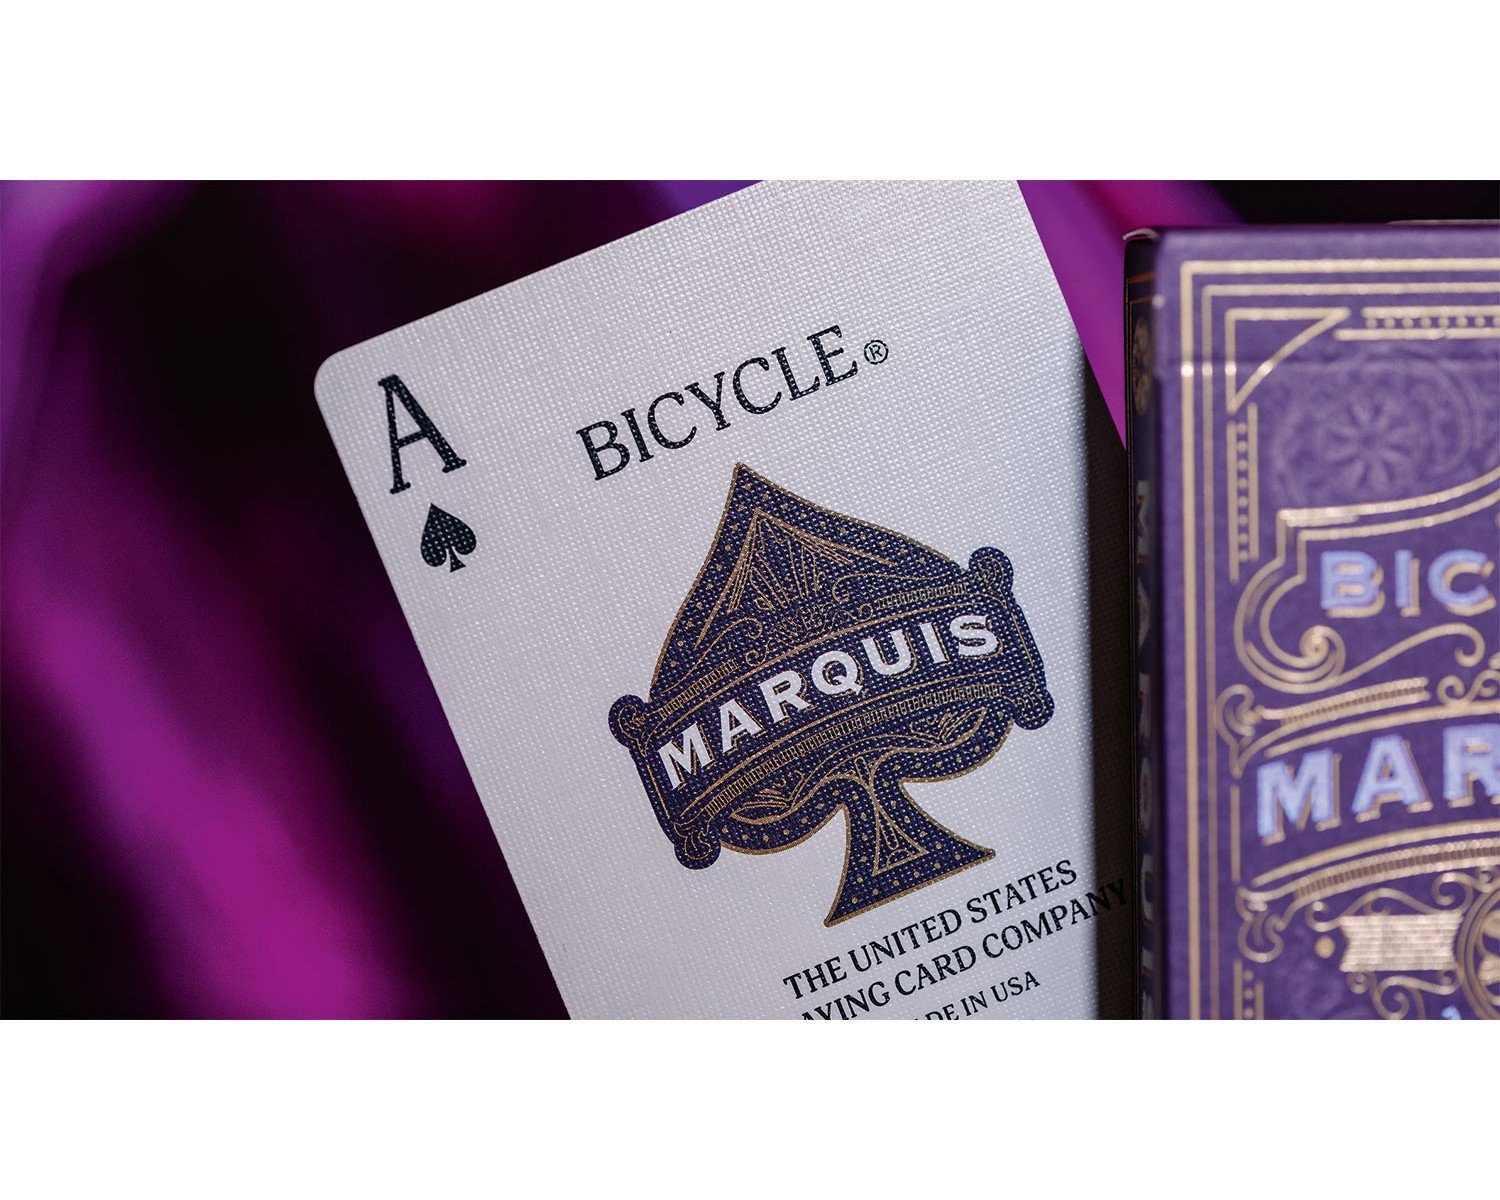 ASS Altenburger Cartamundi Kartendeck Kartenspiel Bicycle - mit einzigartigem Spiel, Air-Cushion®-Finish Marquis